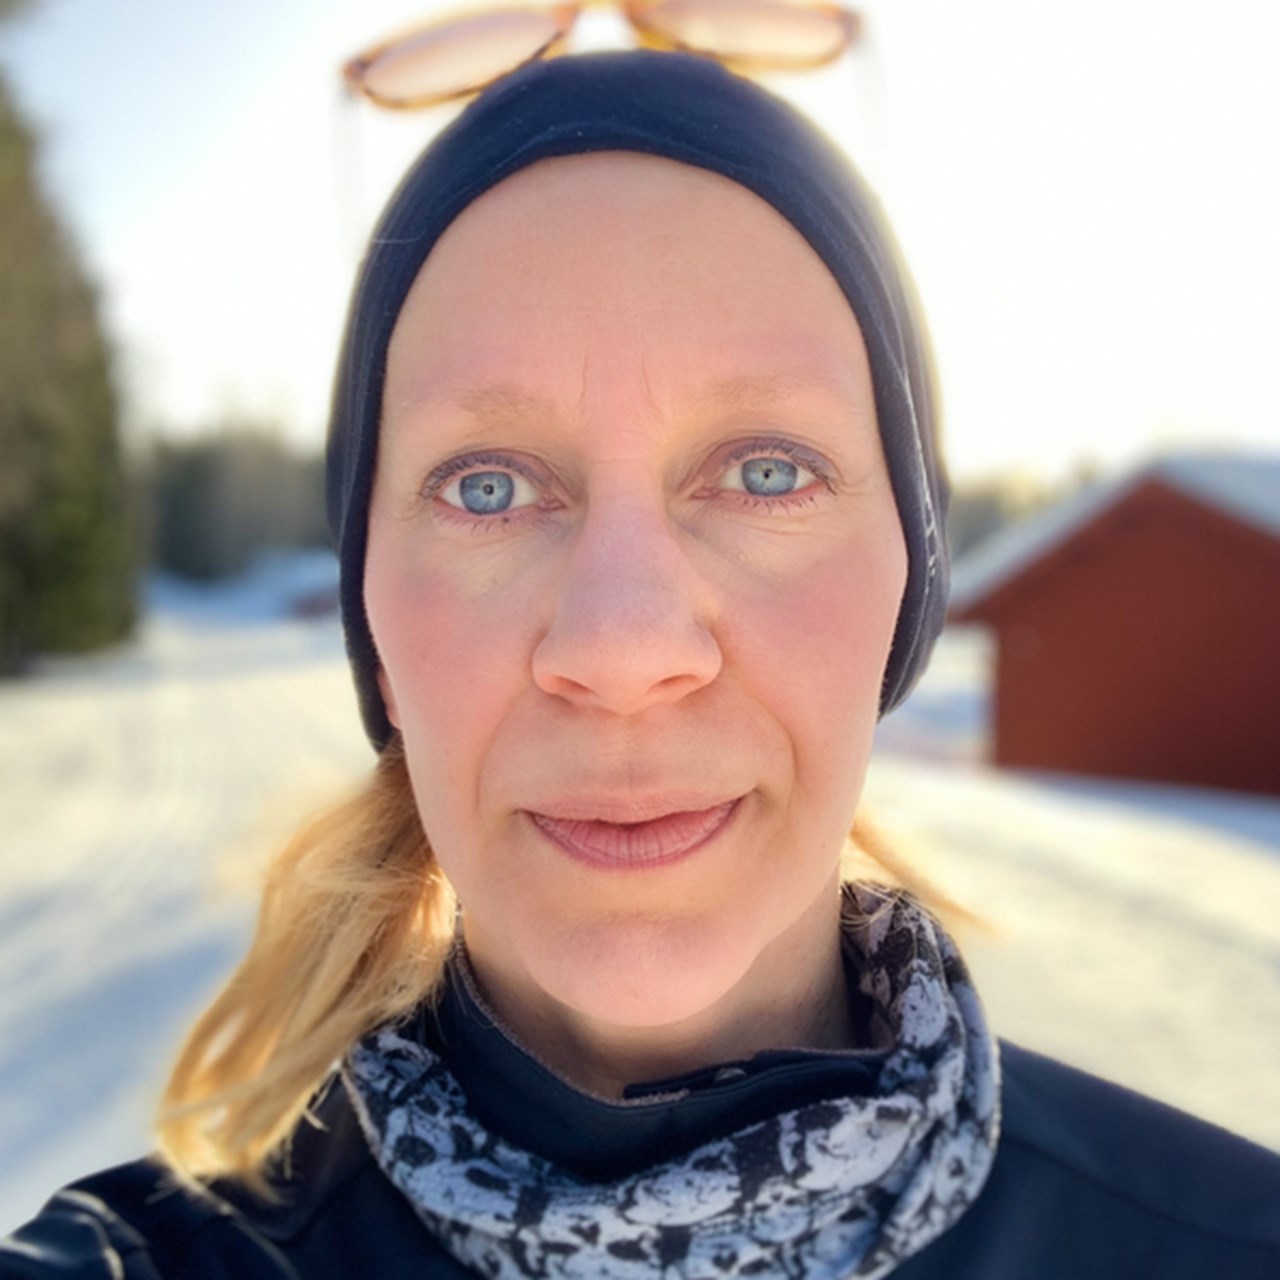 Hanna Söderlund utomhus, snö i bakgrunden.